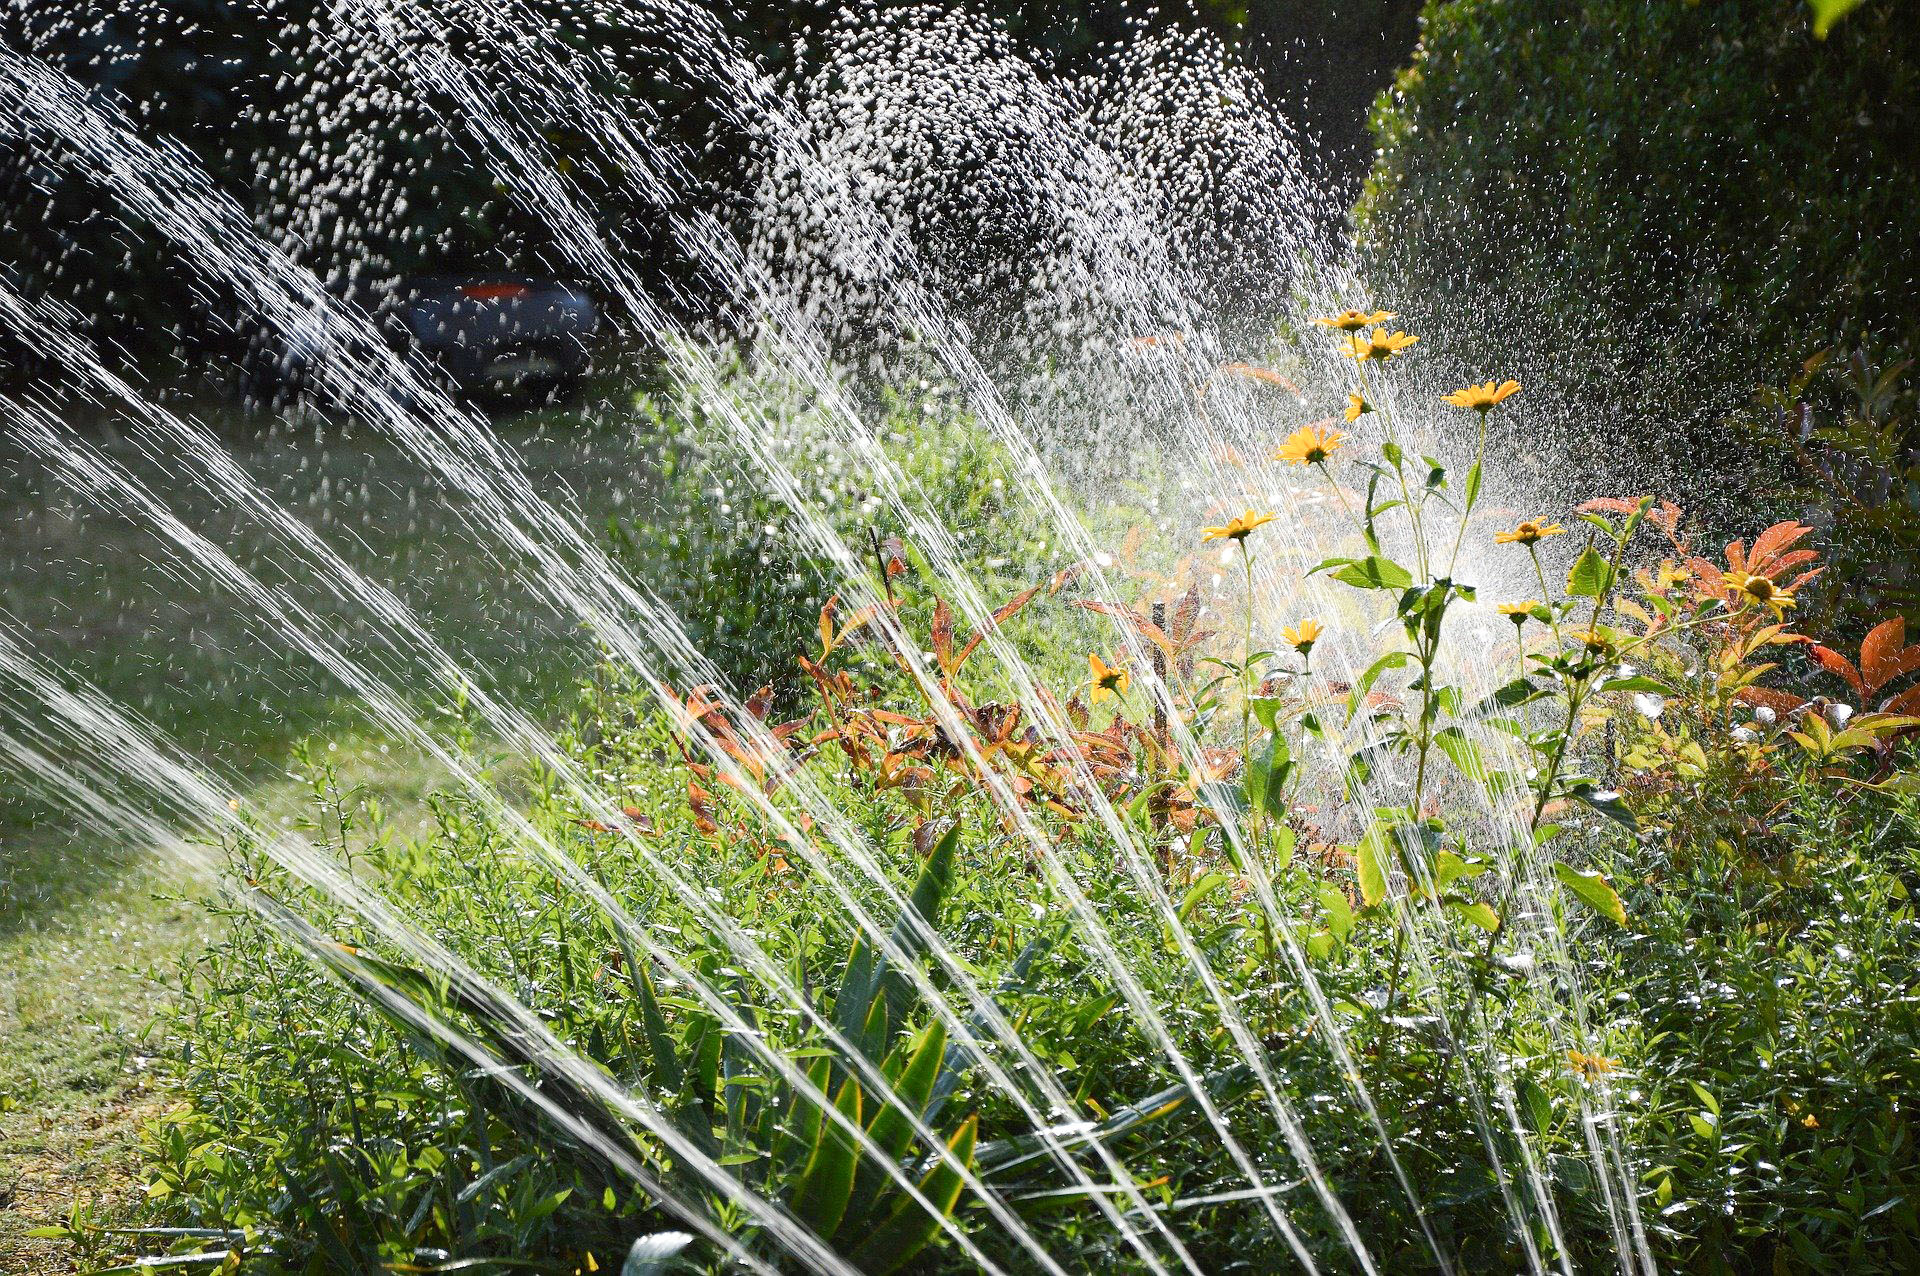 Sprinkler zur Bewässerung des Gartens